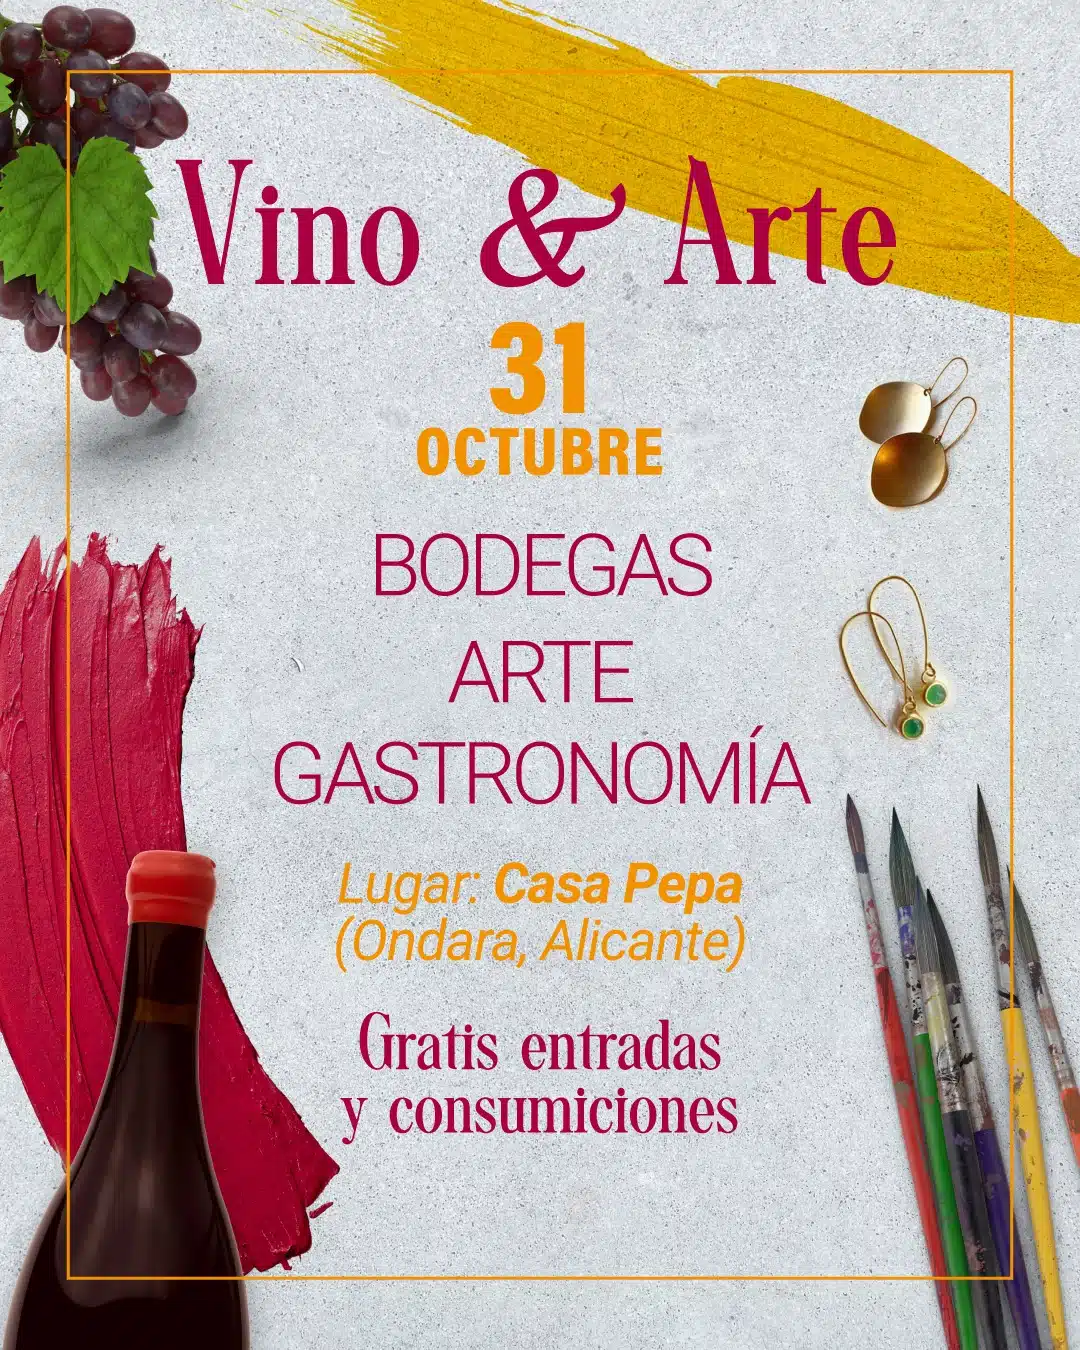 Vino & Arte: feria gastronómica